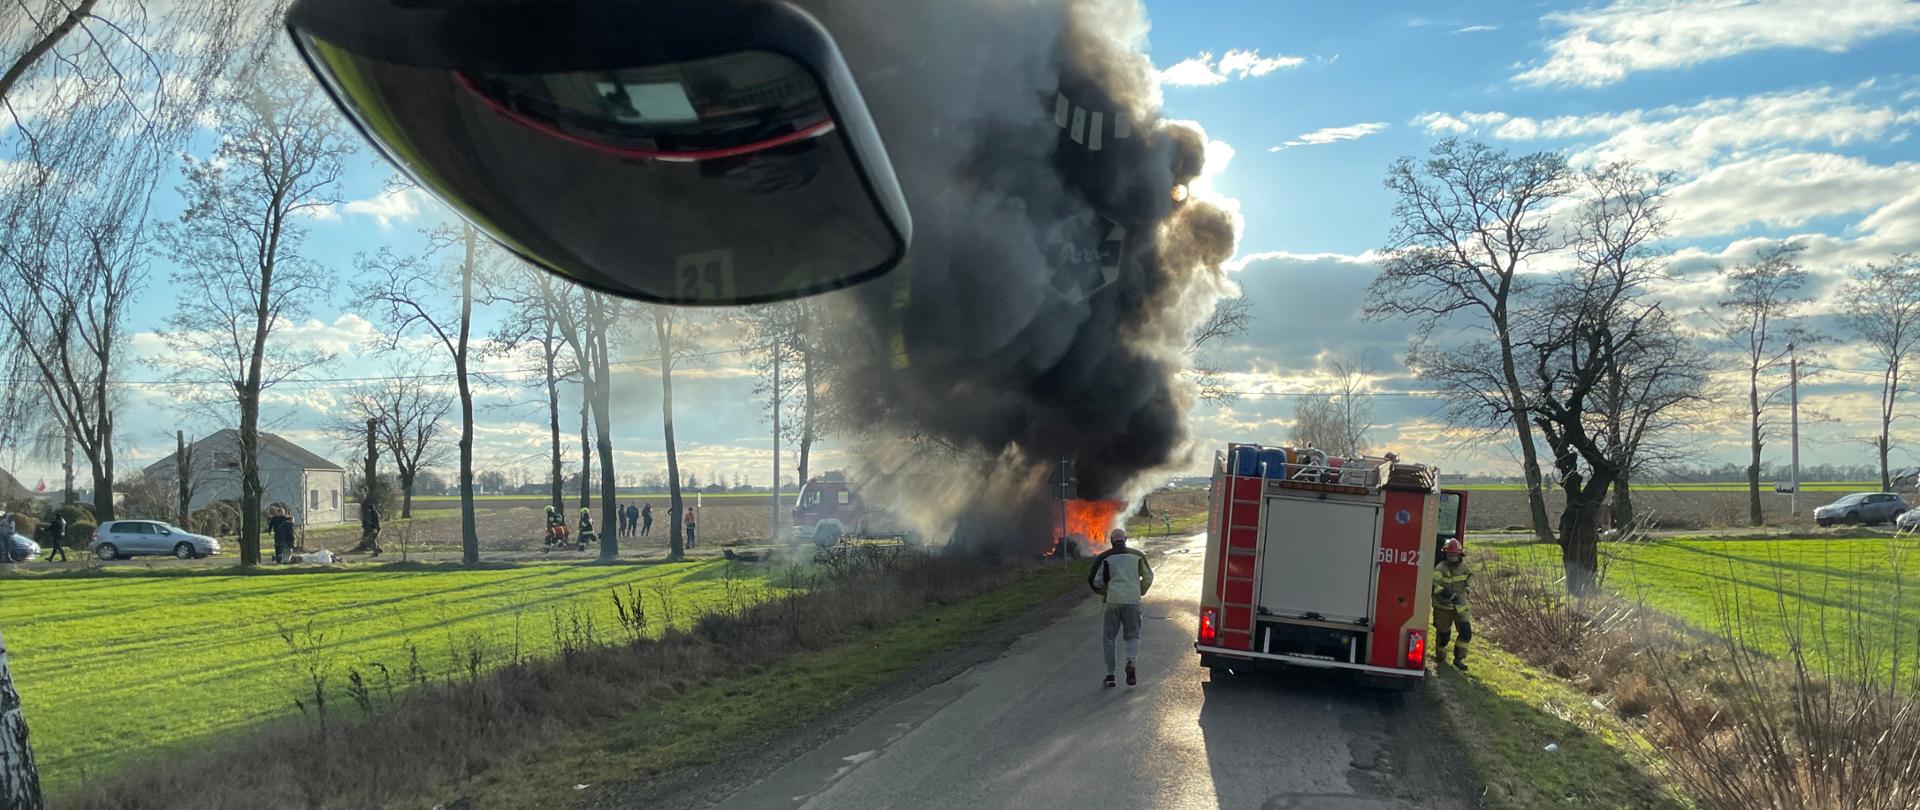 Zdjęcie przedstawia pożar dwóch samochodów osobowych po wypadku na drodze widoczny samochód strażacki jedna osoba postronna z boku pojazdu czarny dym oraz ogień z samochodów przy drzewach w oddali widać inny srebrny samochód oraz drzewa